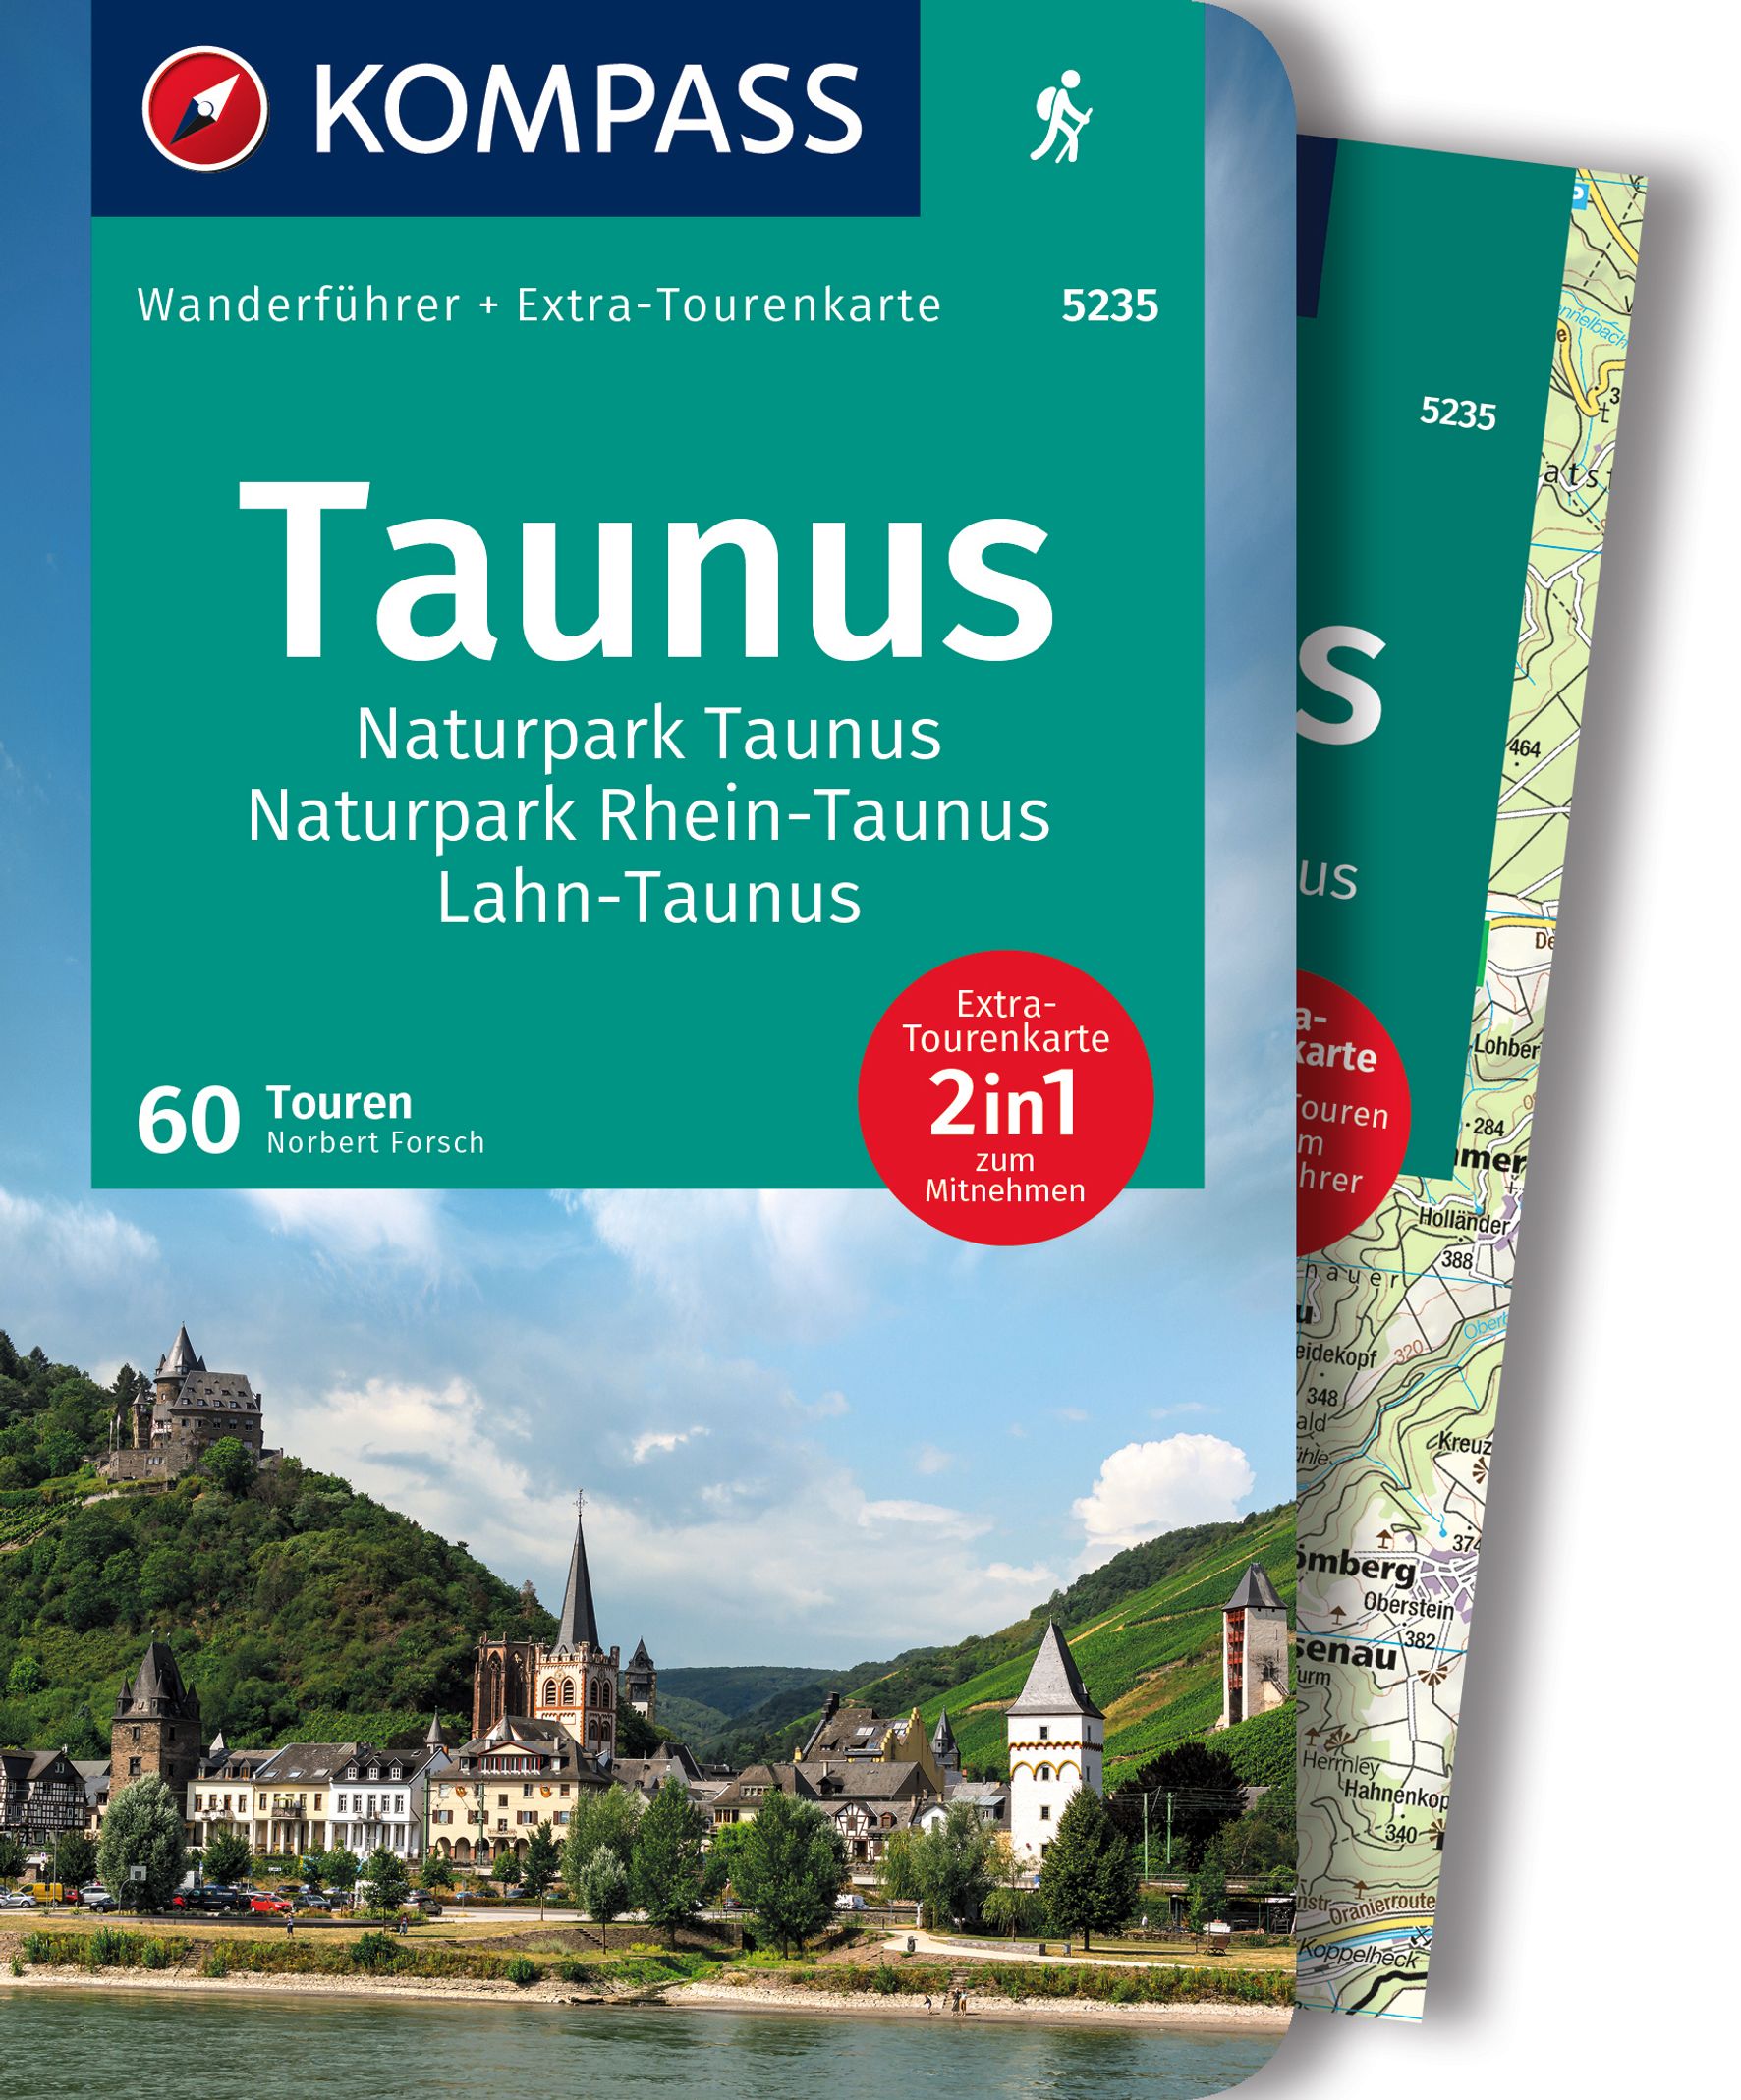 MAIRDUMONT Taunus, Naturpark Taunus, Naturpark Rhein-Taunus, Lahn-Taunus, 60 Touren mit Extra-Tourenkarte